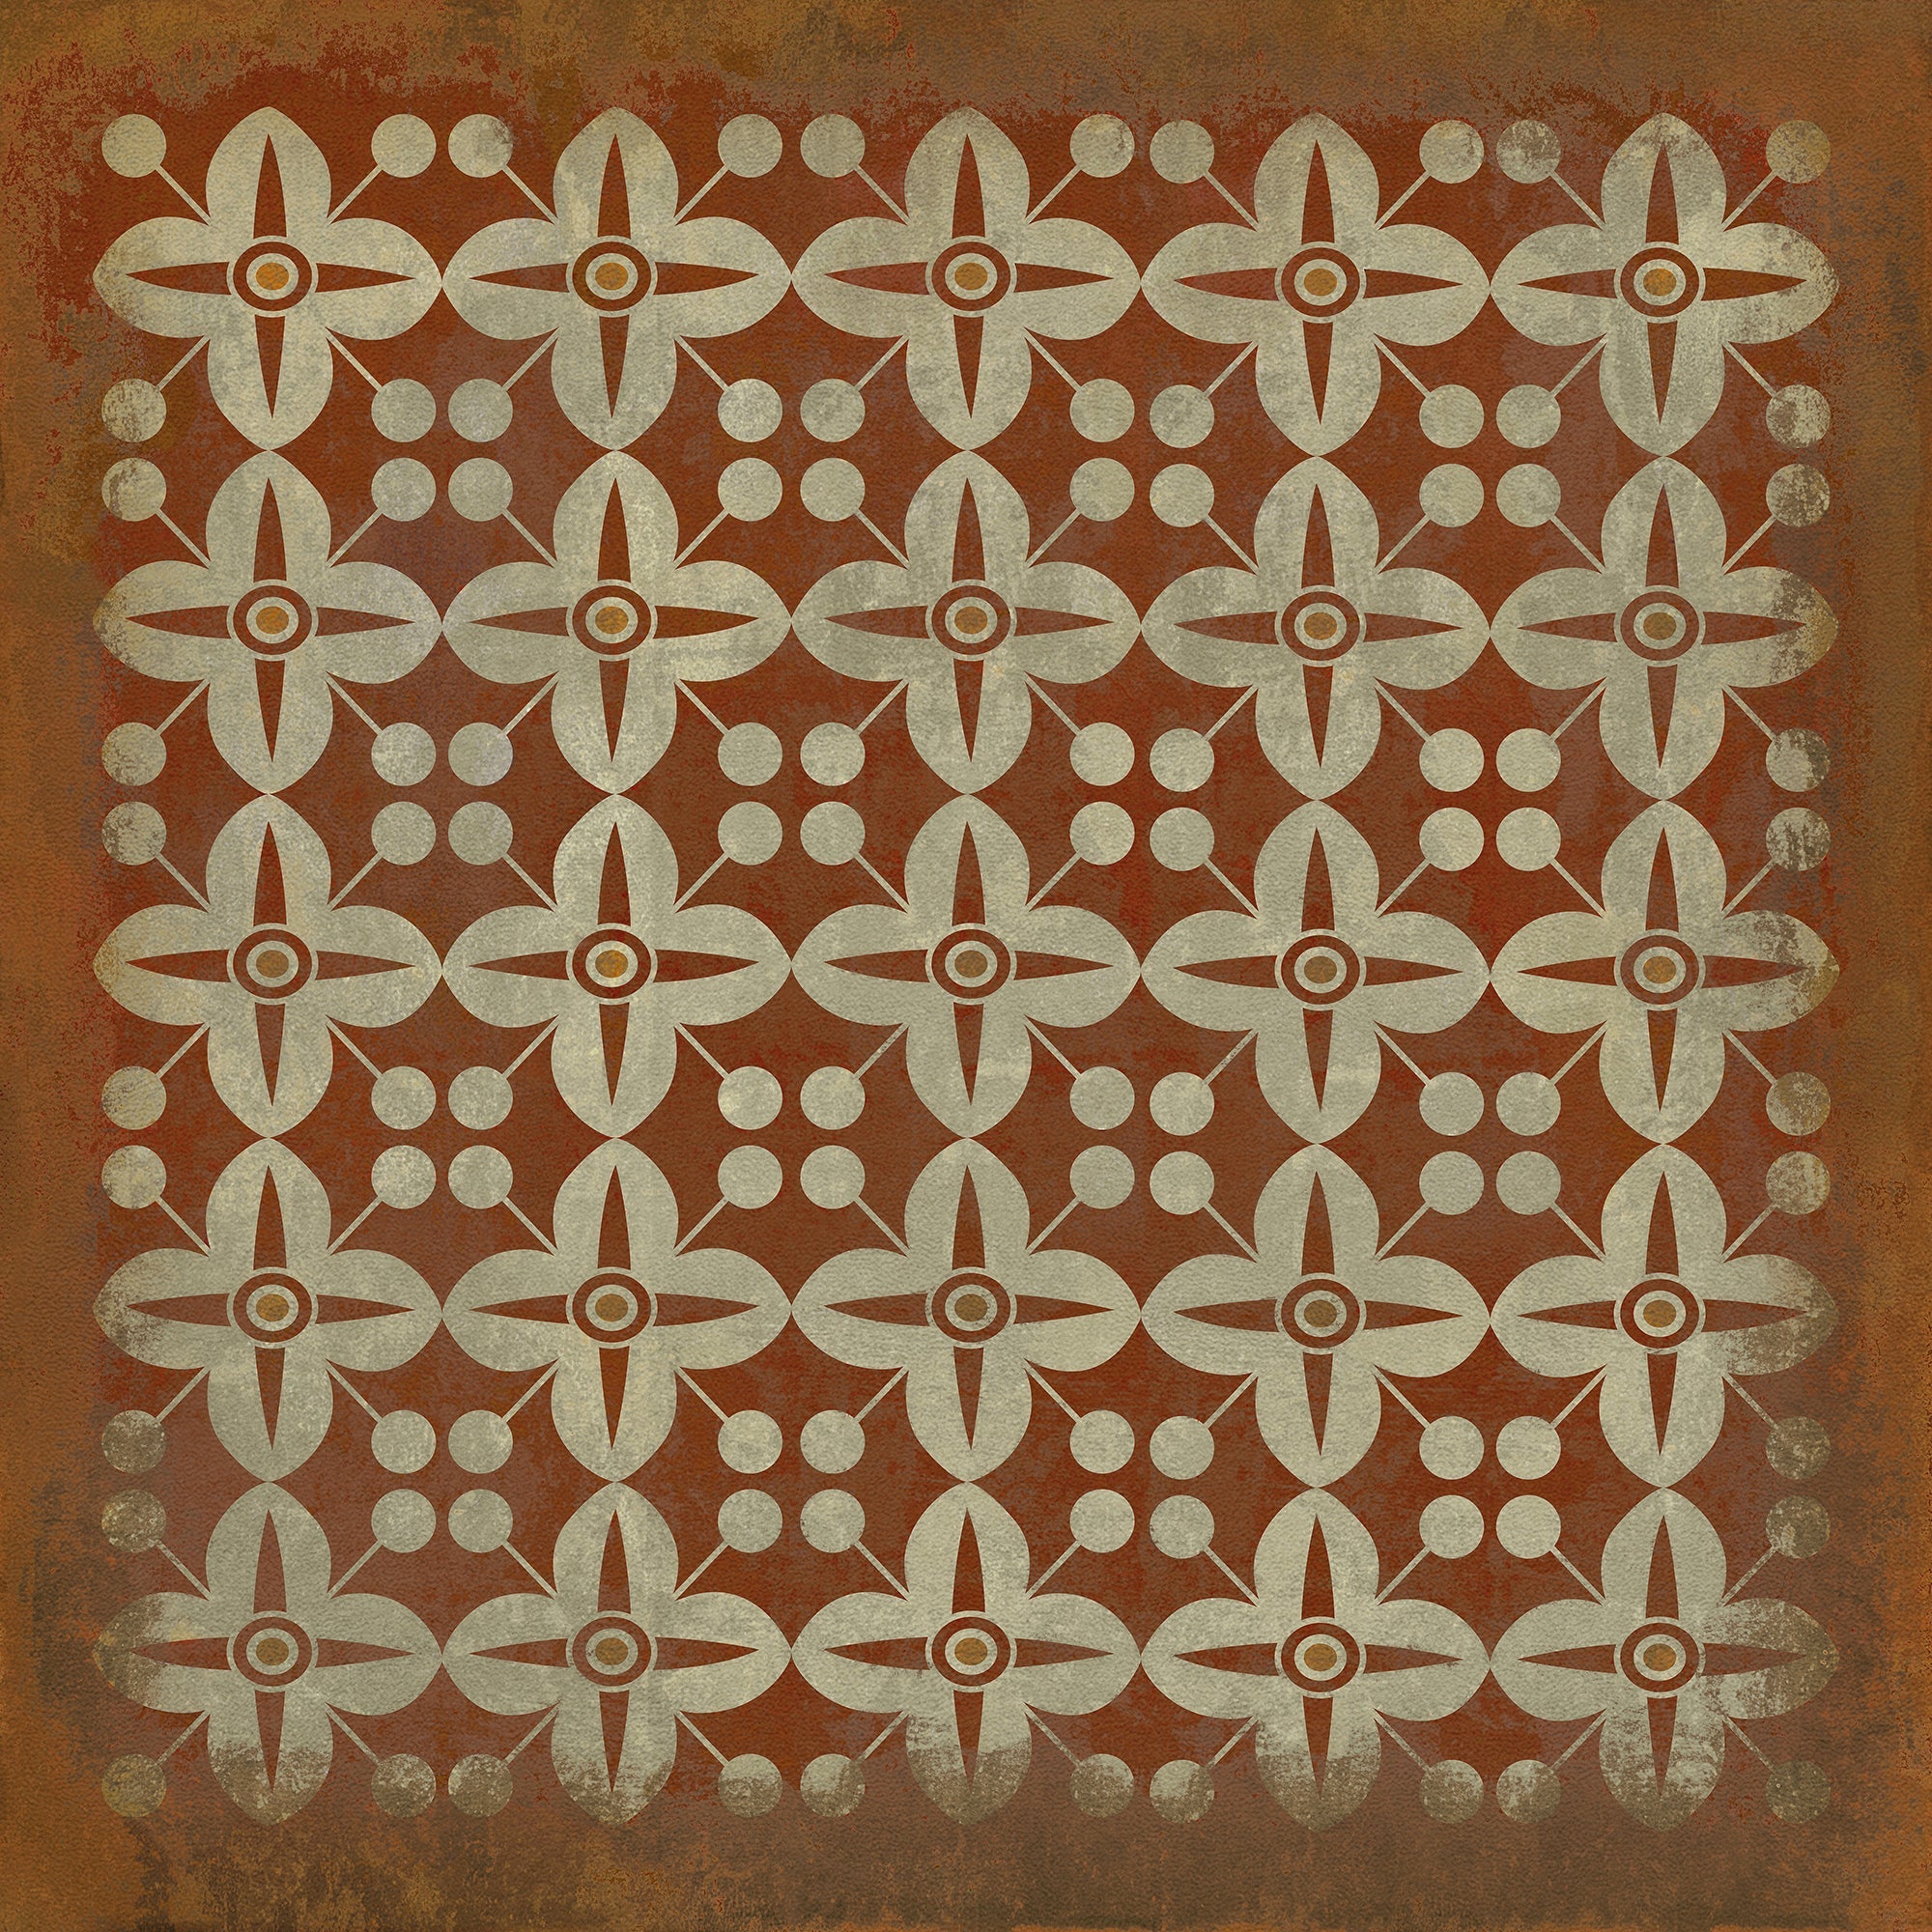 Pattern 03 the Poppy Field Vinyl Floor Cloth